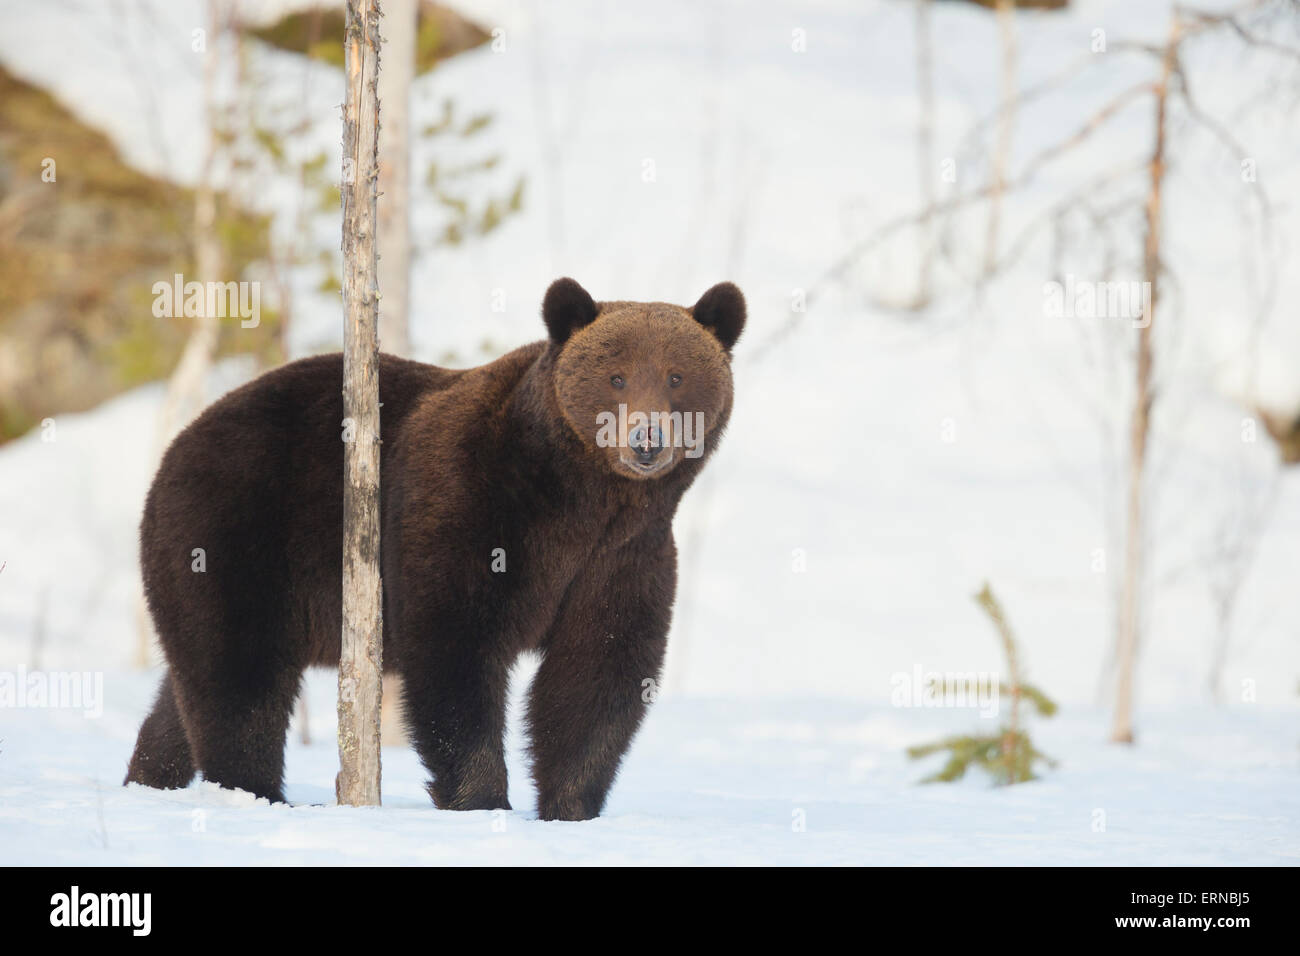 Euroasiática de oso pardo (Ursus arctos arctos), durante el invierno, Finlandia. Foto de stock